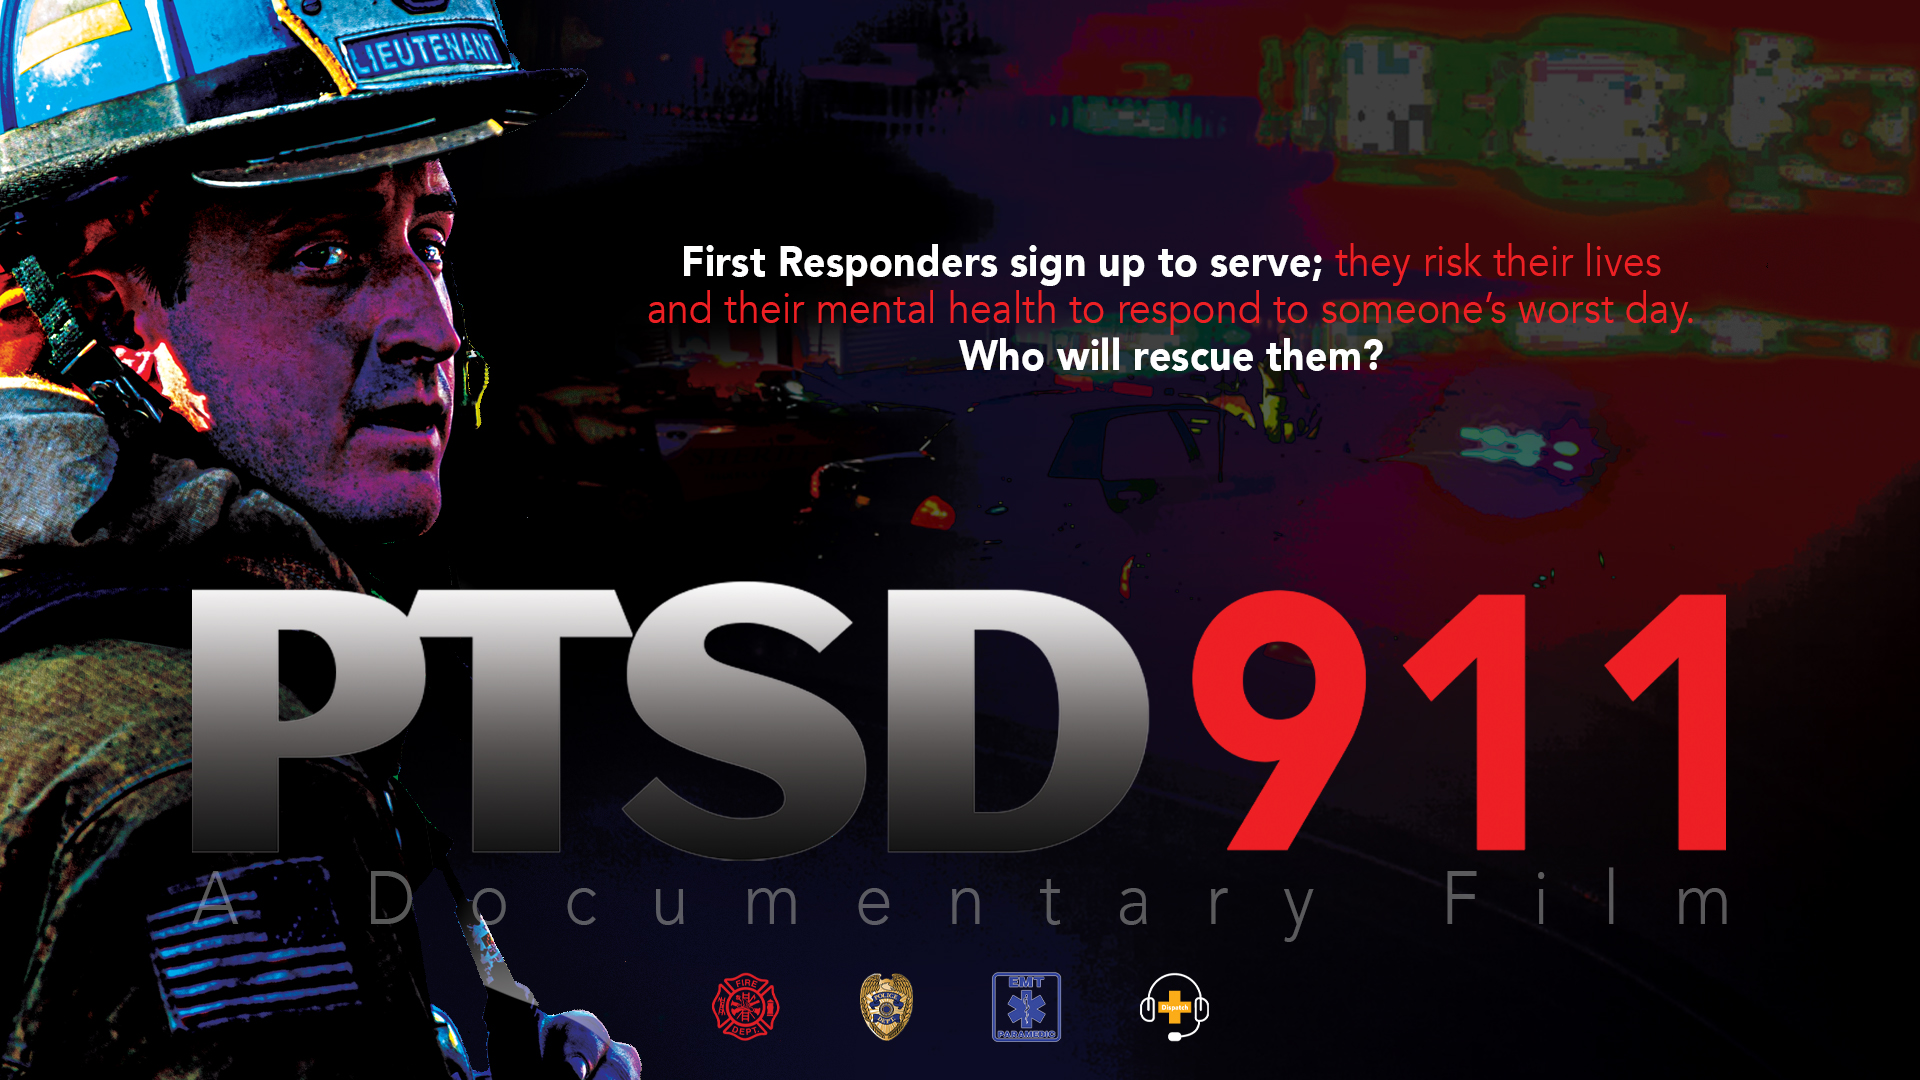 PTSD911 Documentary